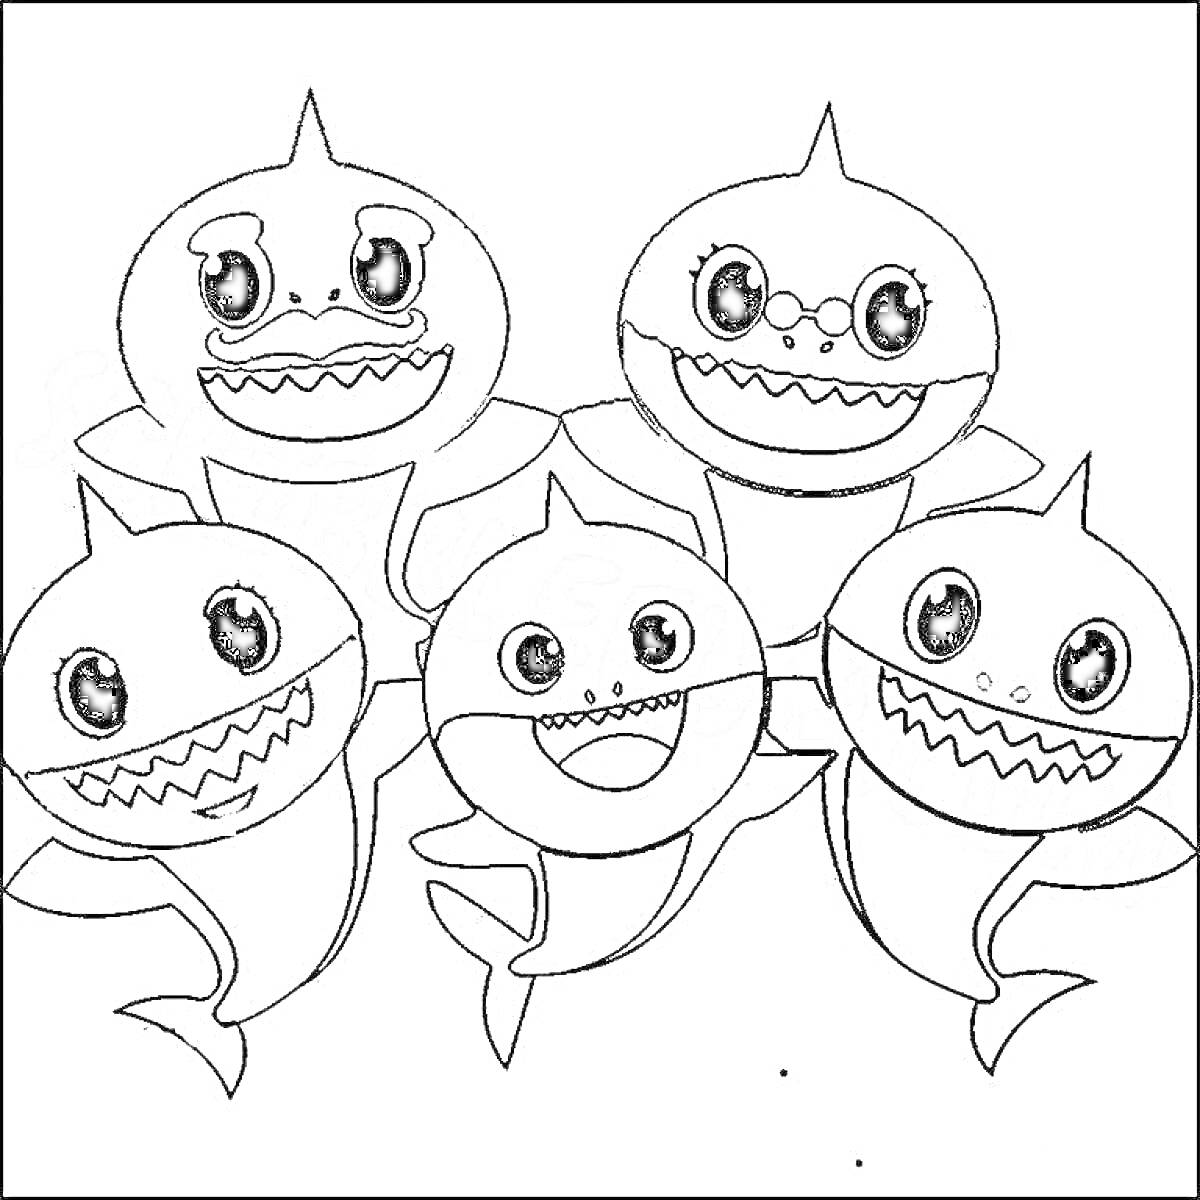 группа улыбающихся акул, пять акул с большими глазами и зубастыми улыбками, одна в центре и по две с каждой стороны.